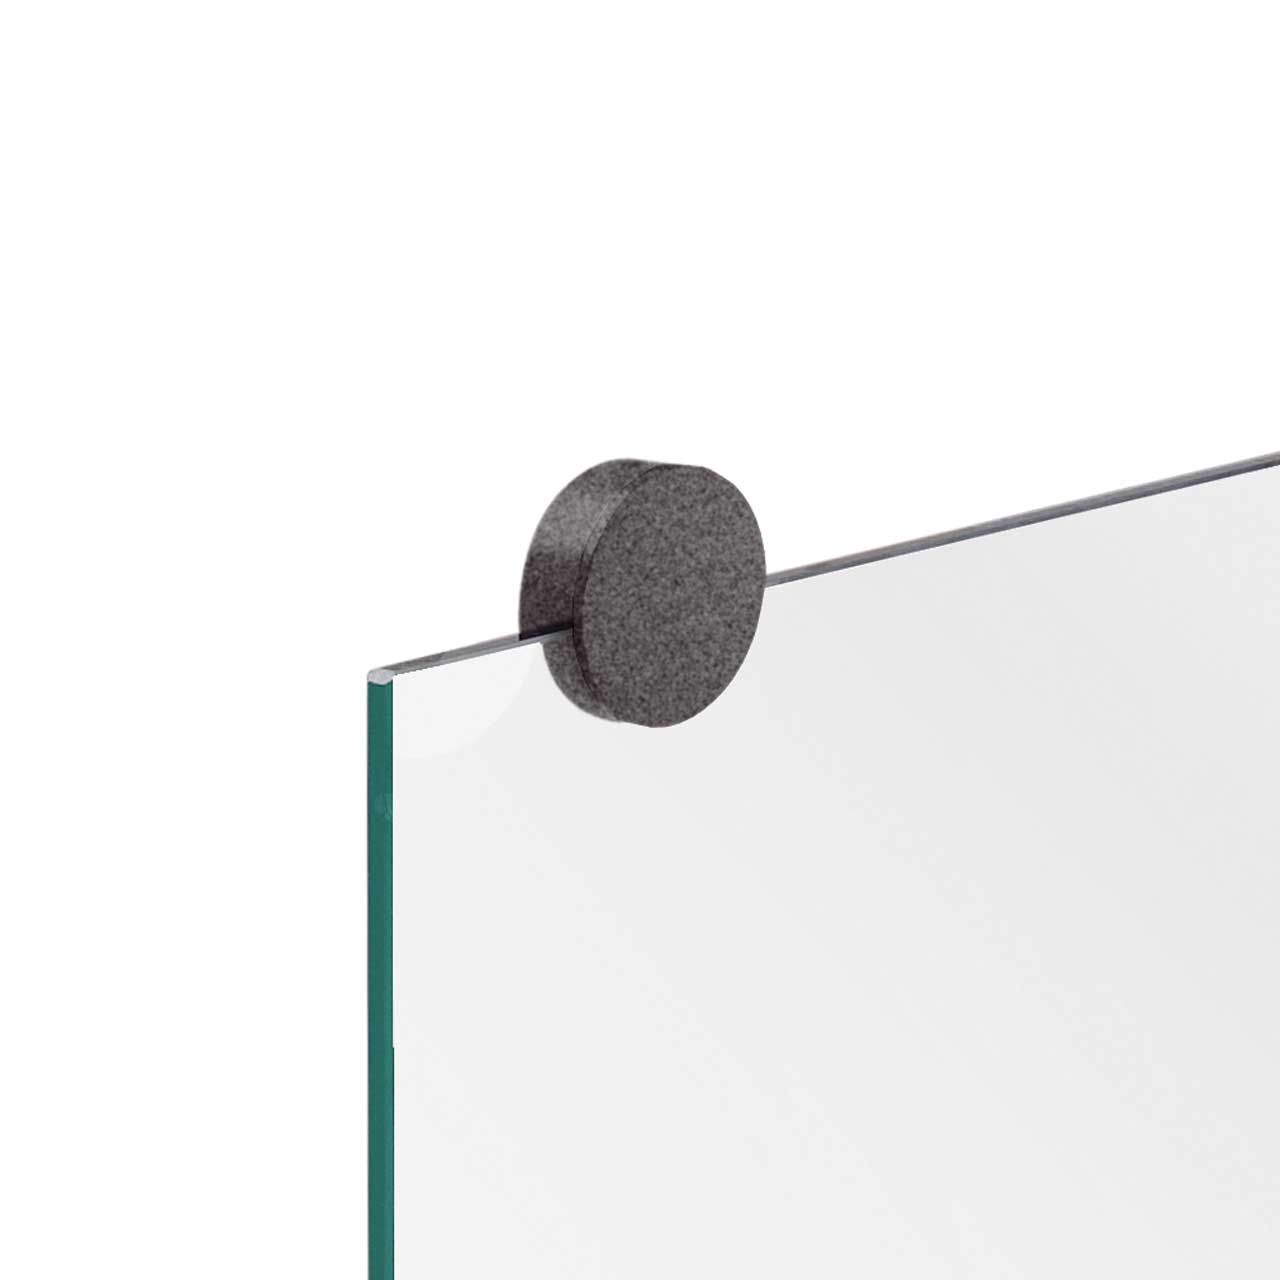 1 Set Design Spiegel Halter - A100  , einfach gute  Duschvorhänge